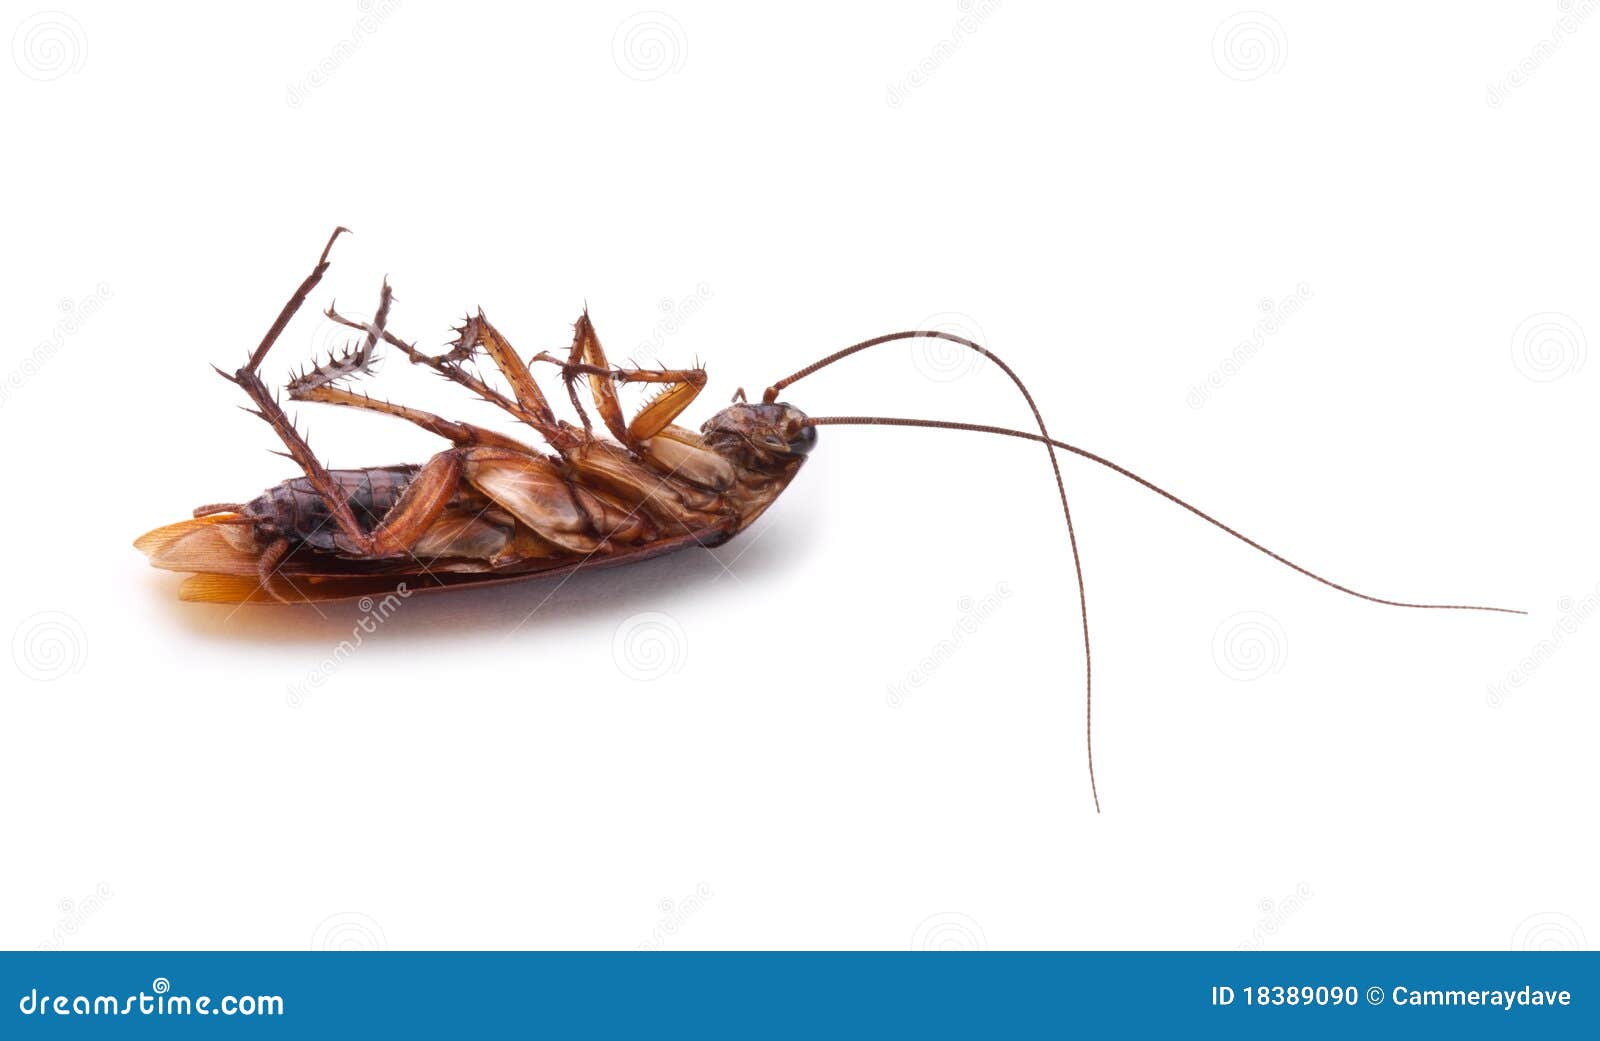  dead cockroach roach